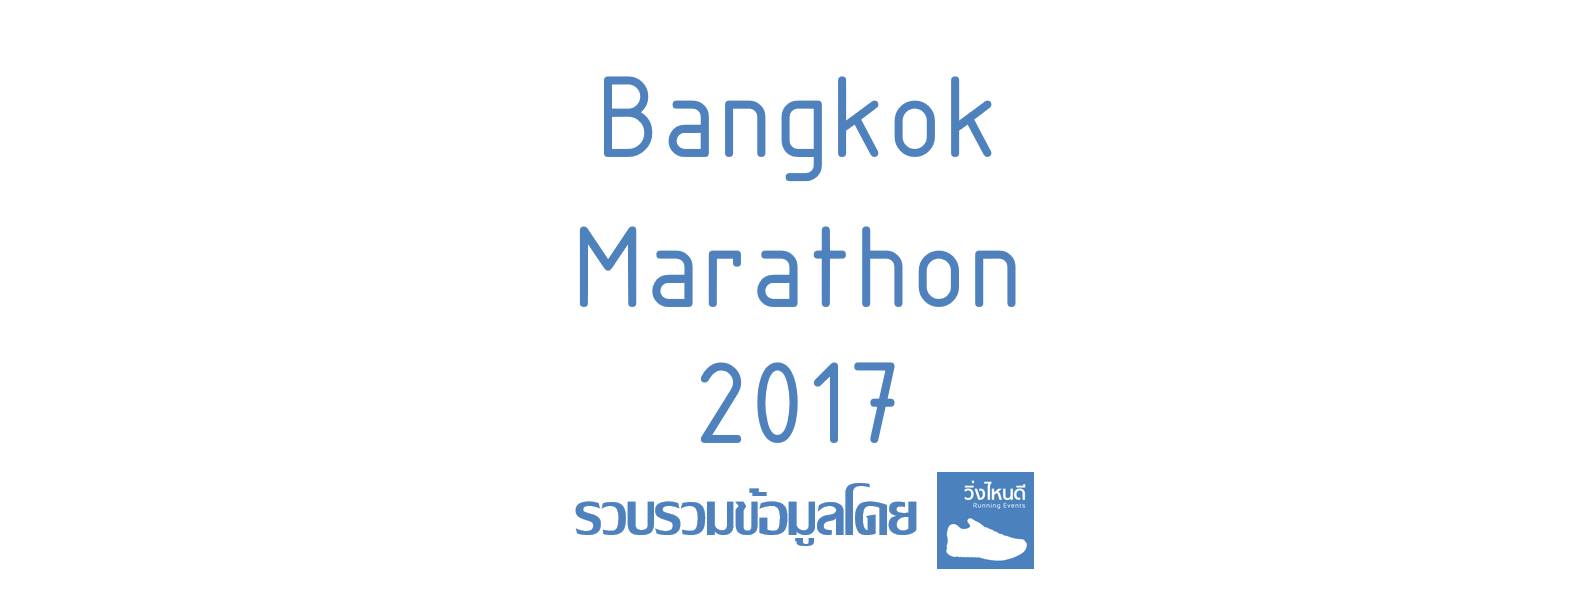 Bangkok Marathon 2017